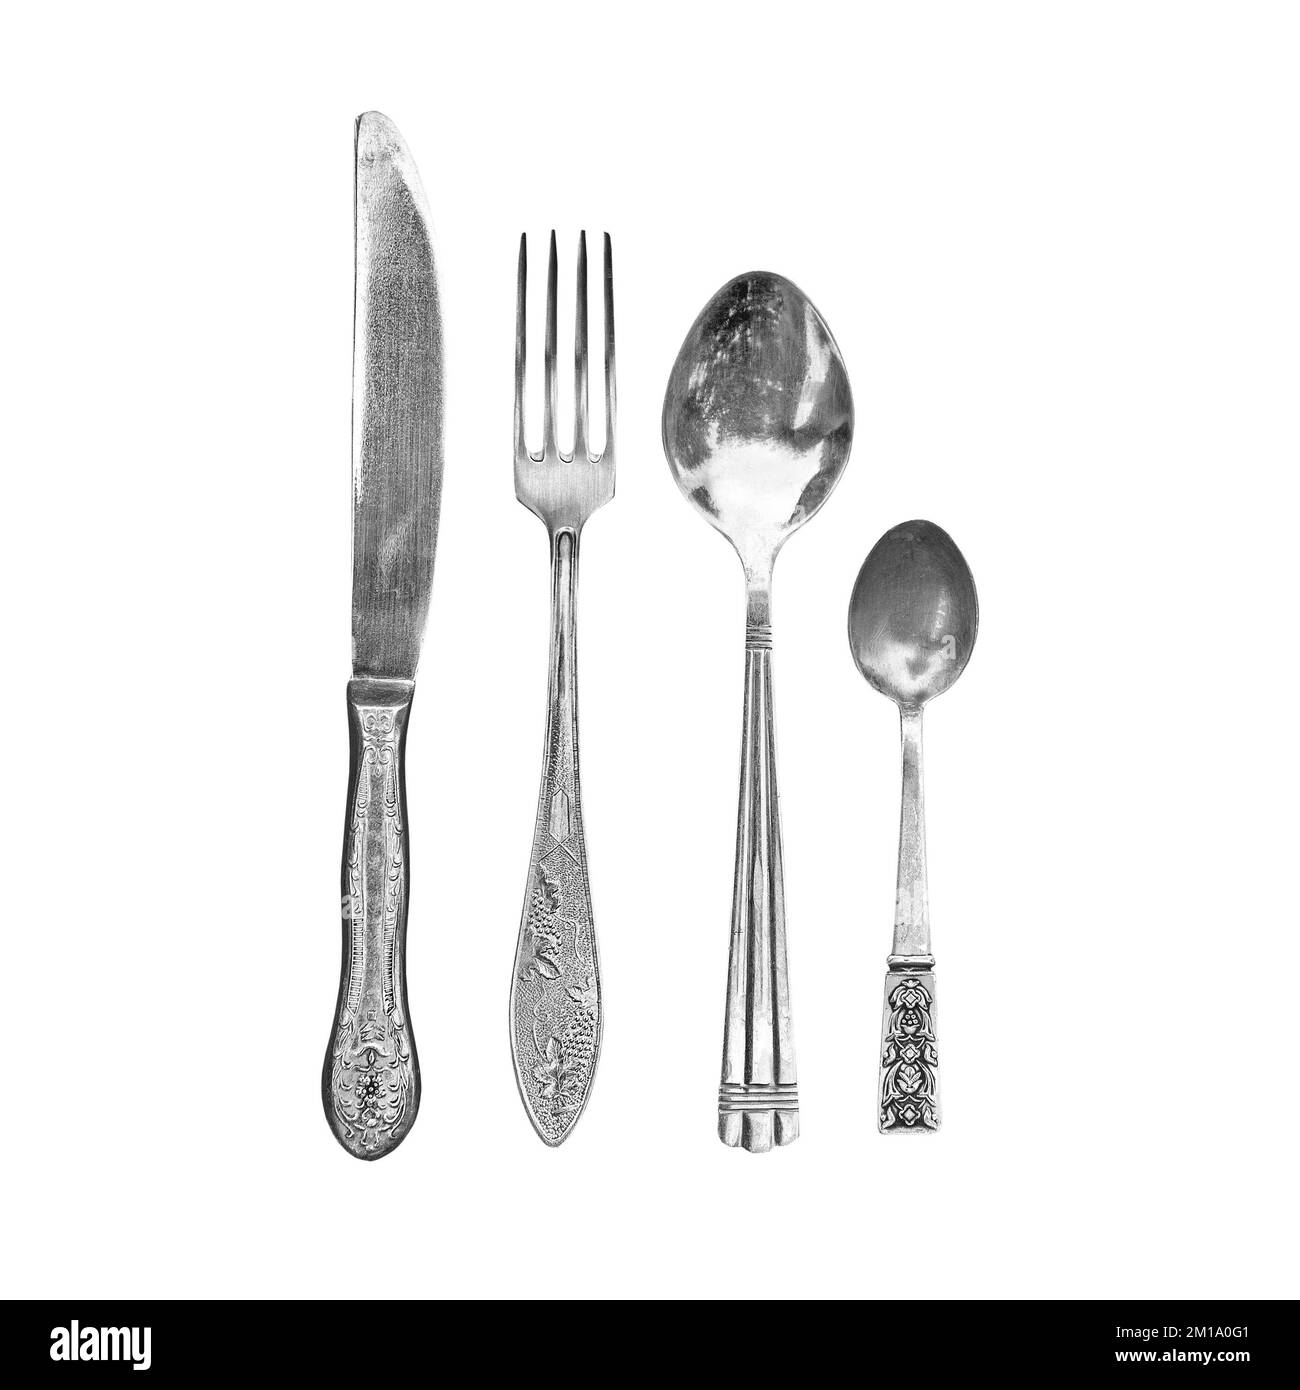 Juego de cubiertos vintage utensilios de cocina aislados sobre fondo blanco, cuchillo, tenedor y cuchara vista superior Foto de stock